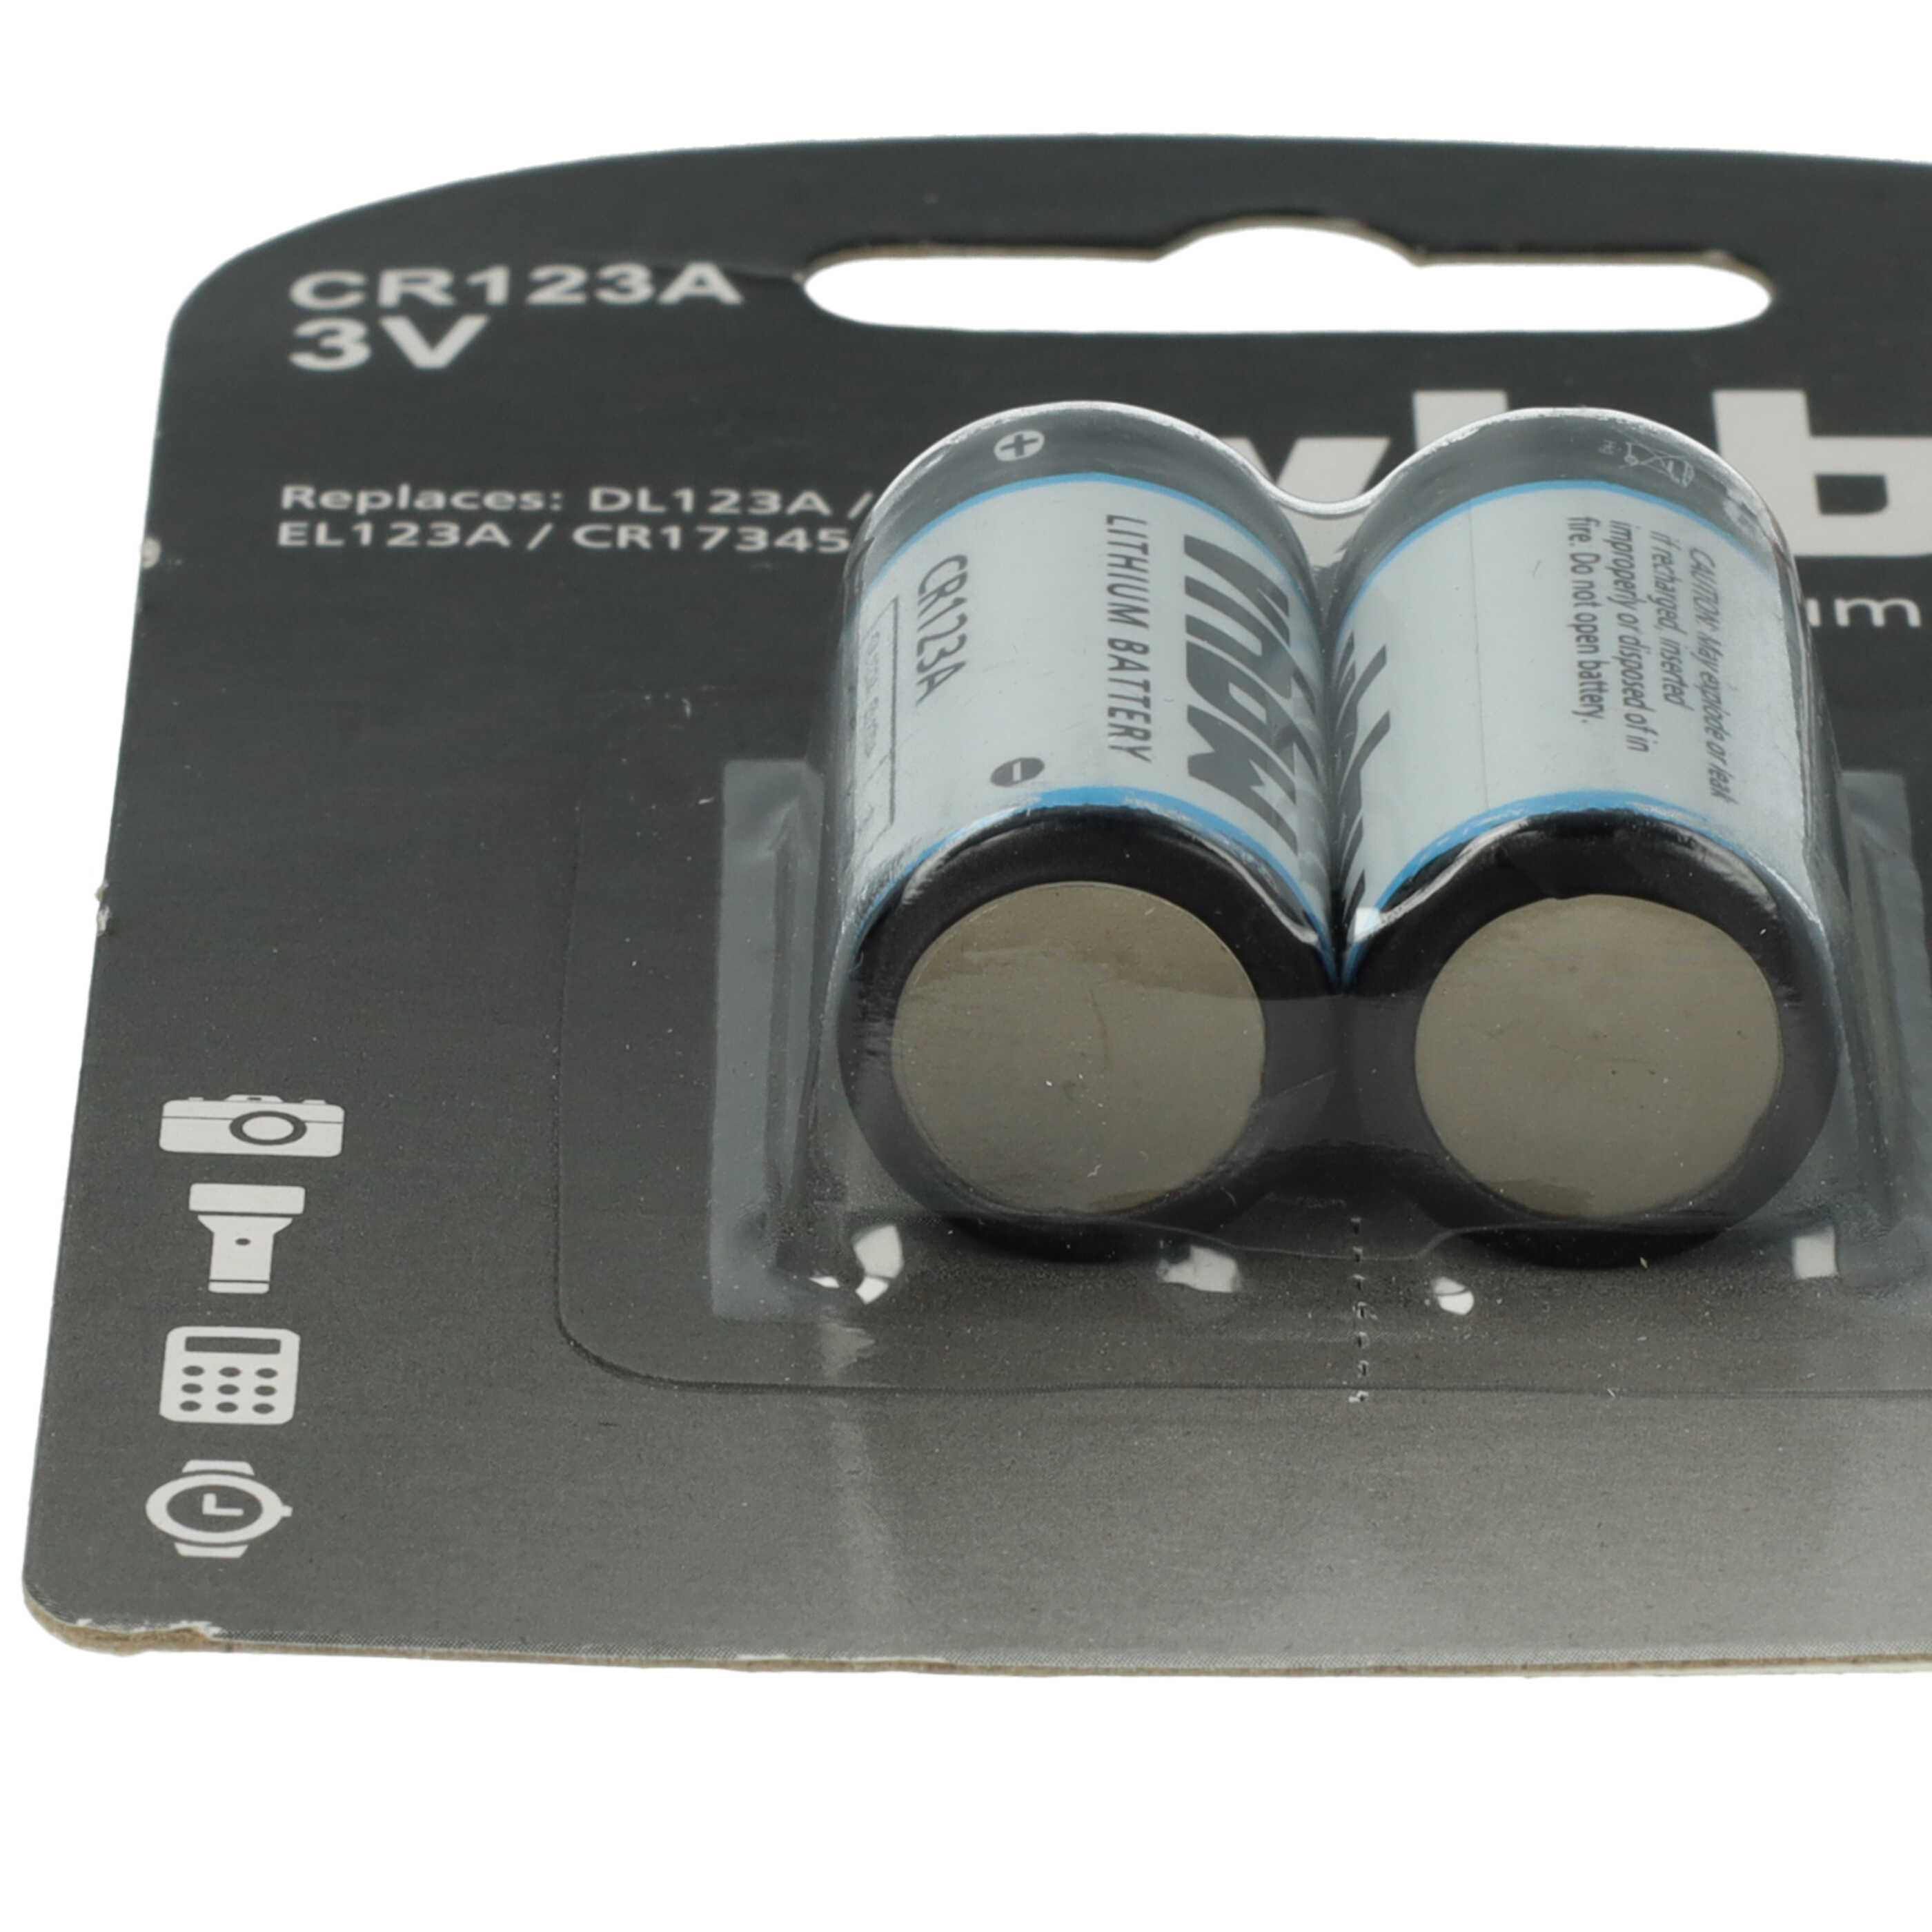 2x Bateria zamiennik EL123A, 16340, CR17435, DL123A, CR17345, CR123A - 1600 mAh 3 V Li-Ion